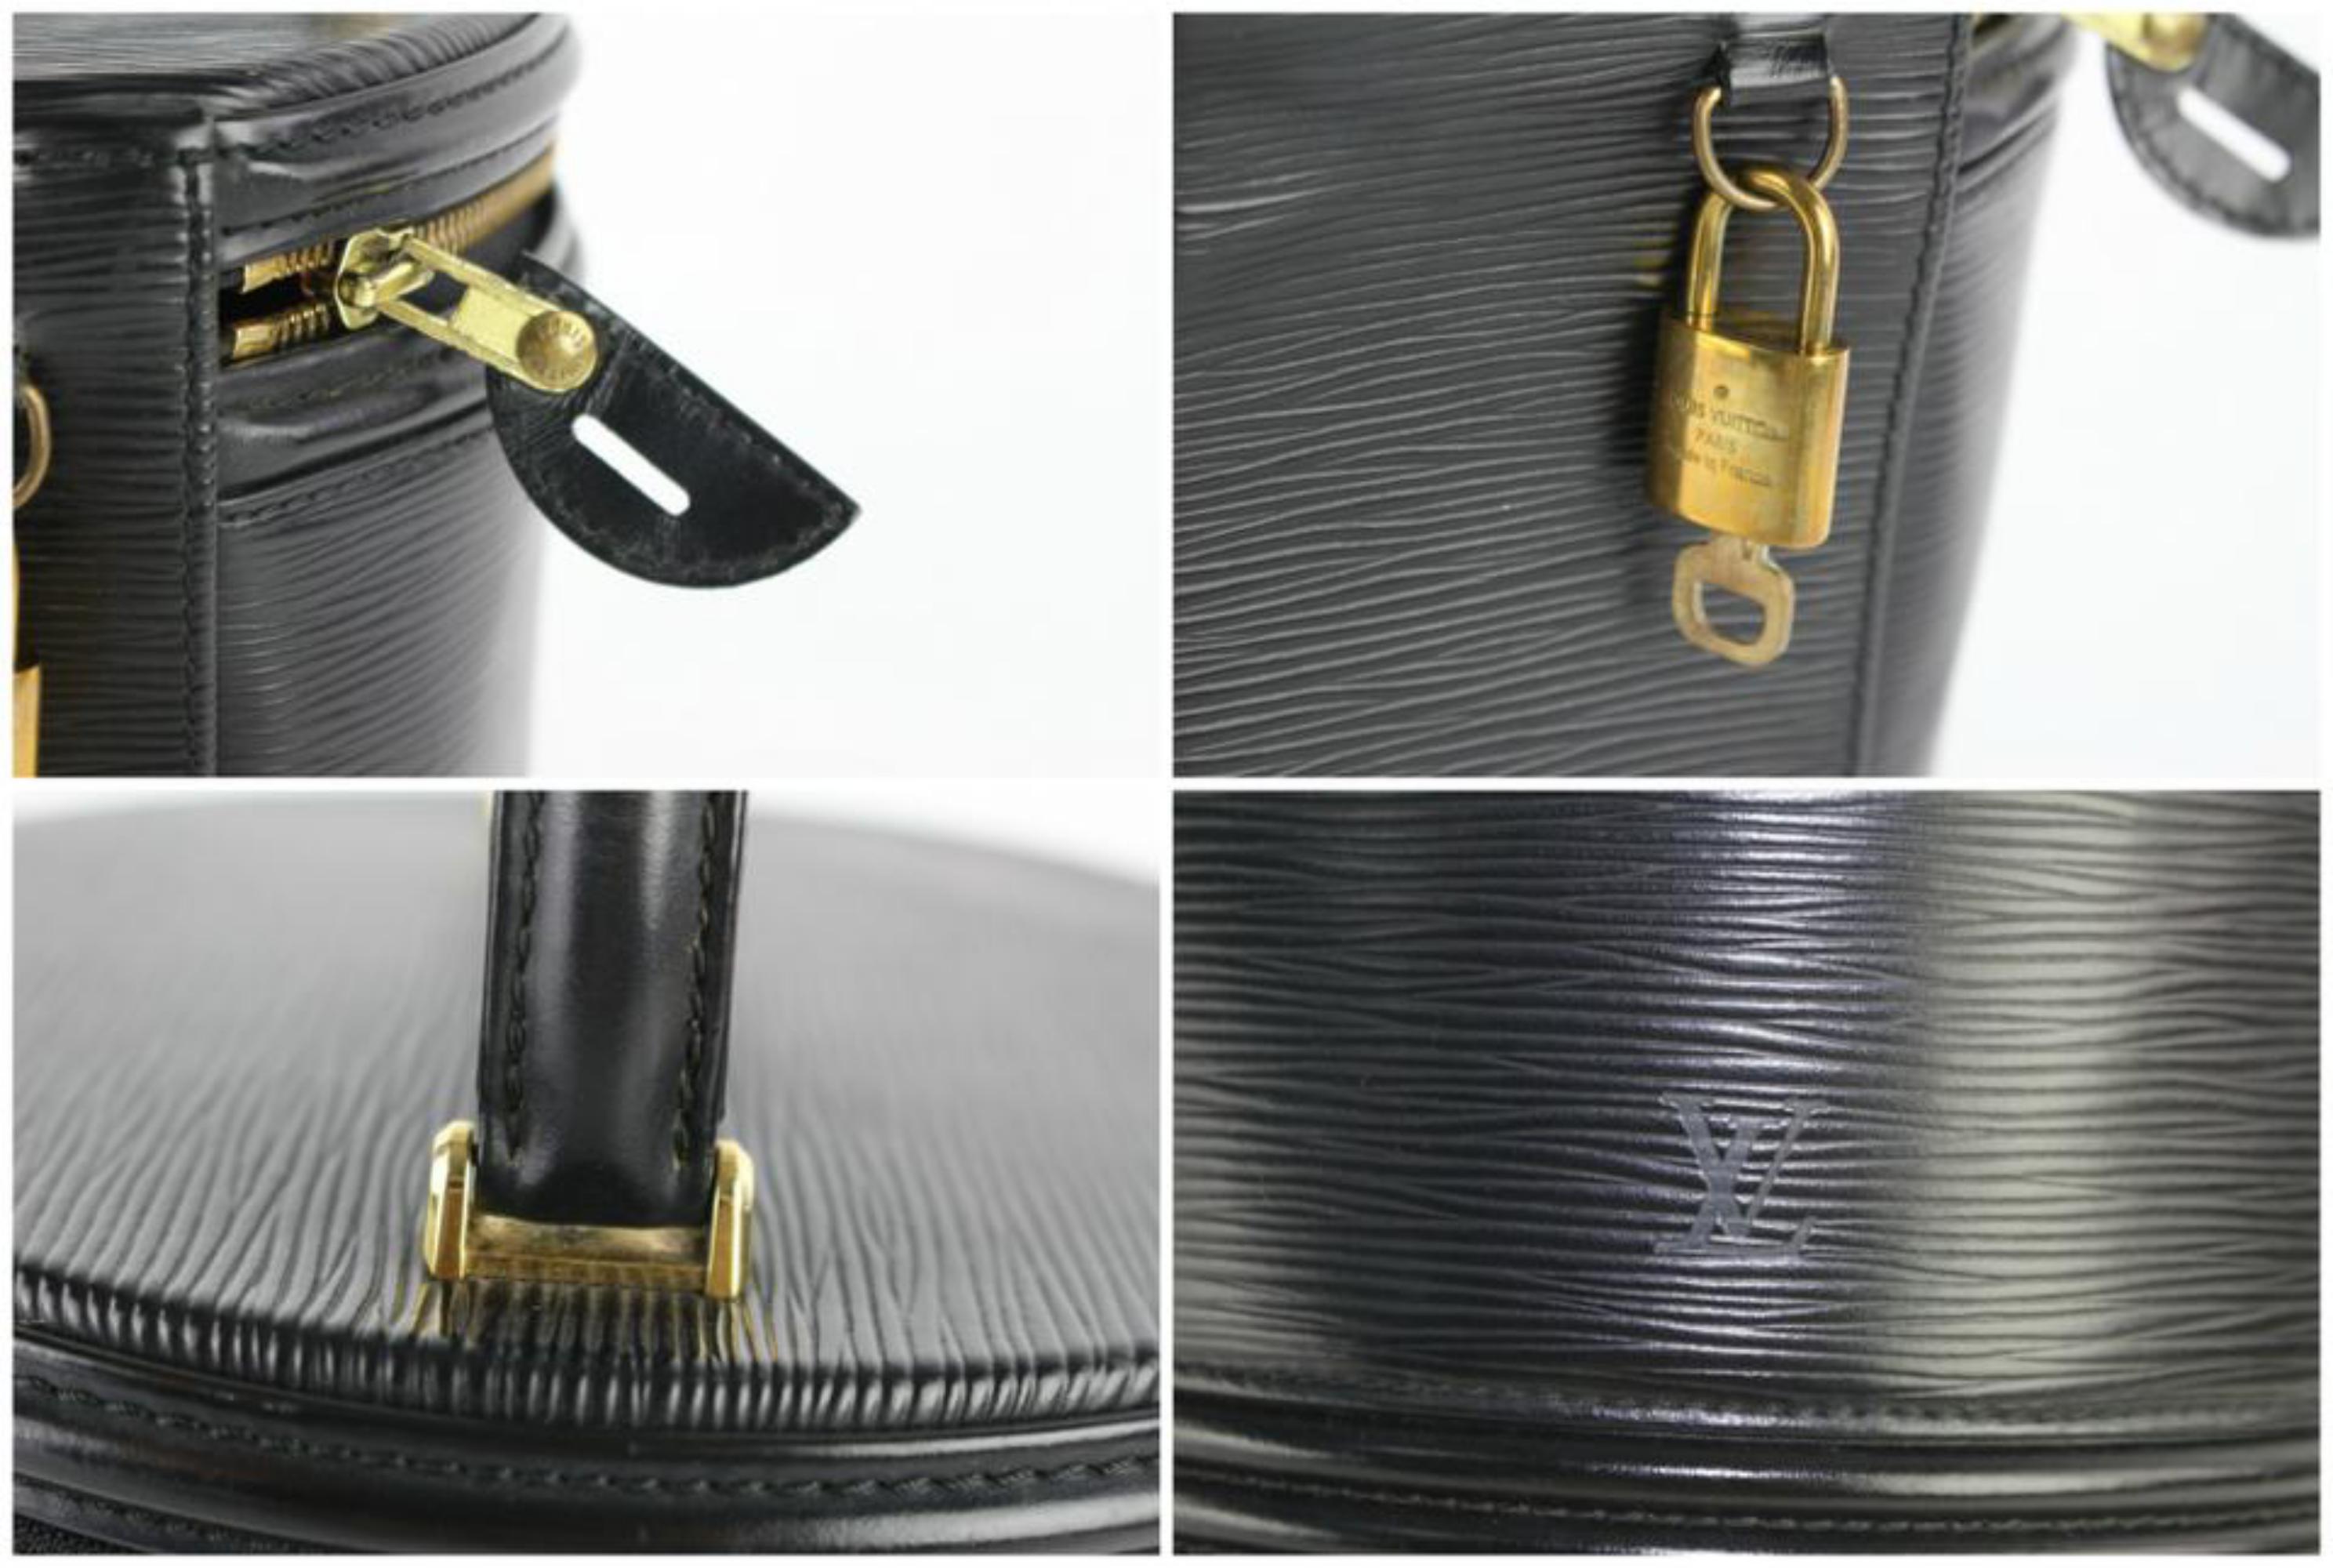 Louis Vuitton Cannes Noir Vanity Tote Case 27lz0129 Black Leather Satchel For Sale 3